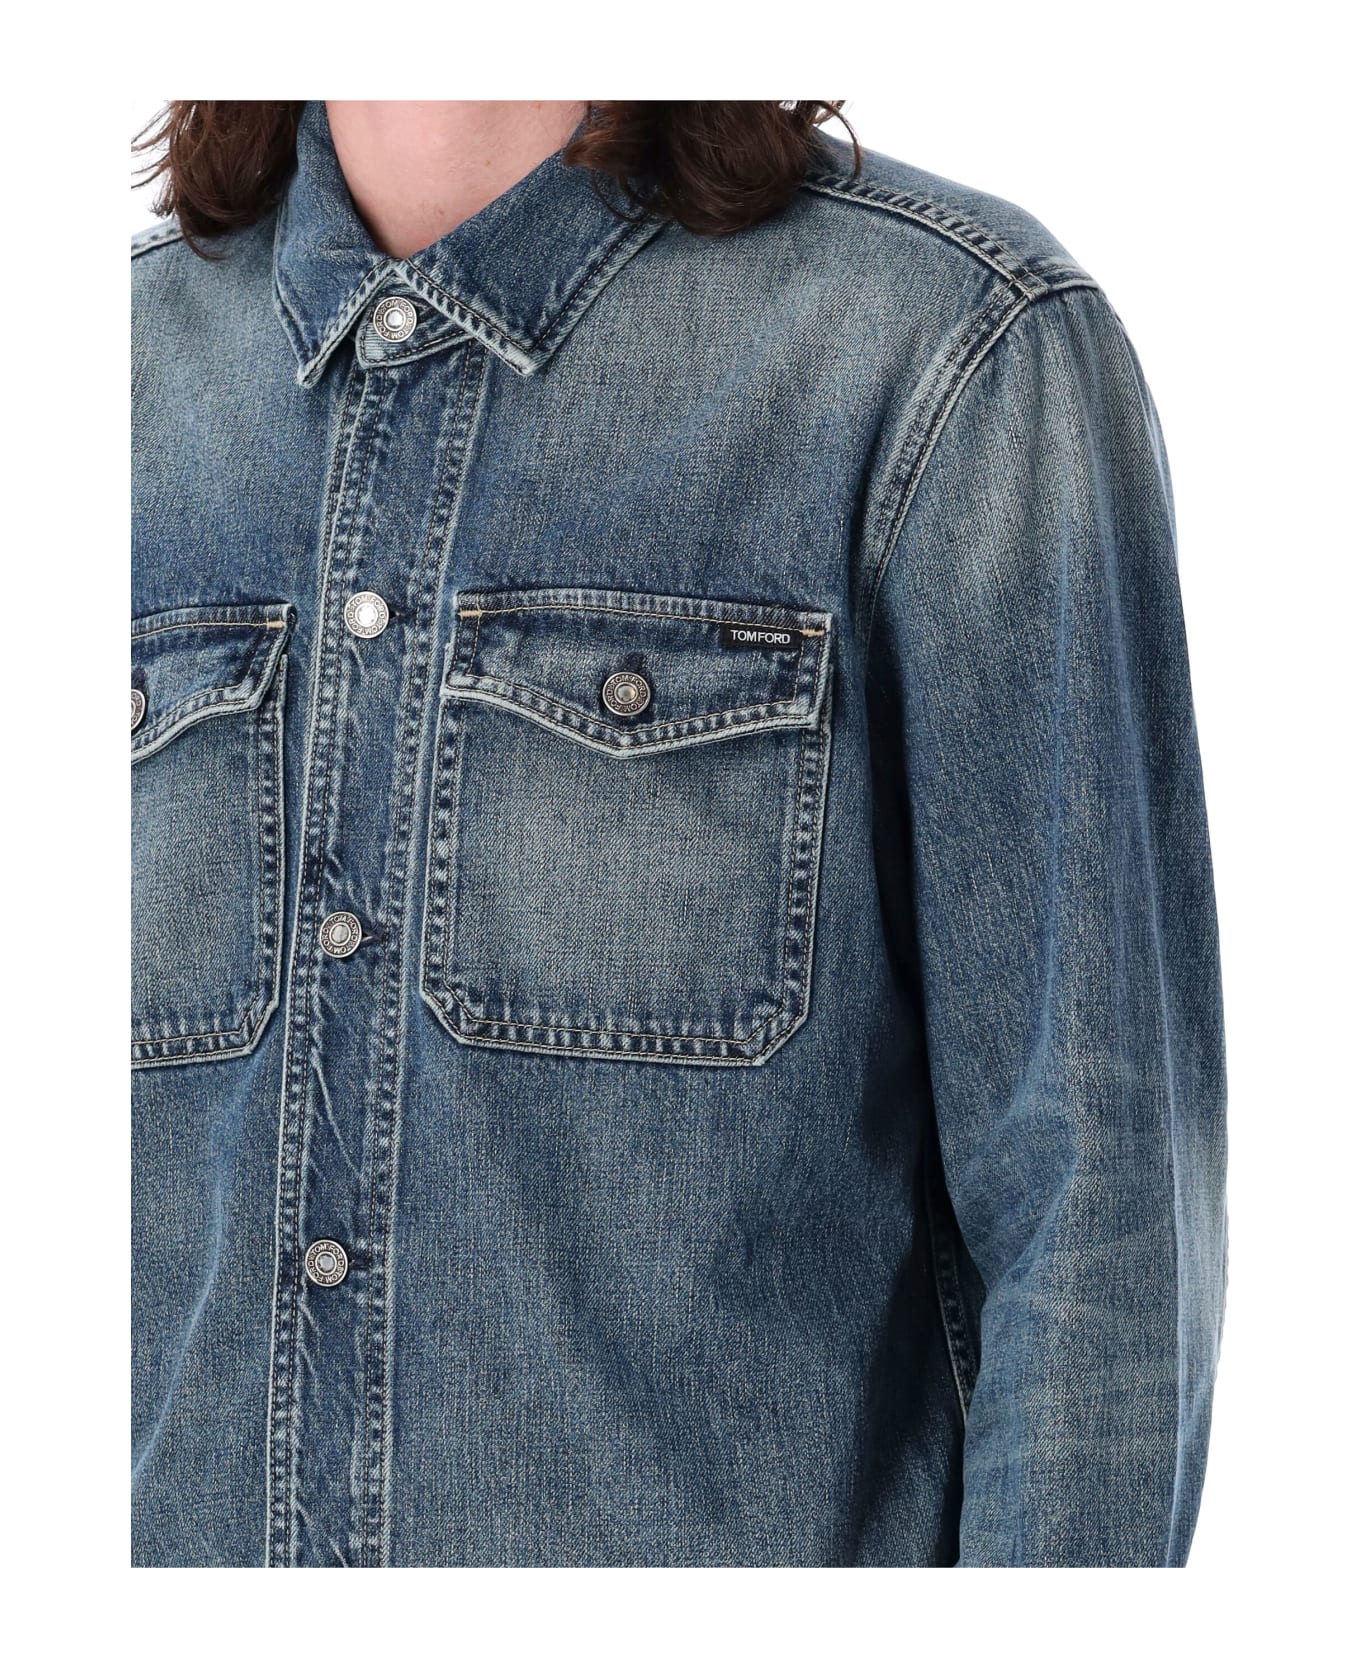 Tom Ford Denim Shirt Jacket - VINTAGE PALE BLUE